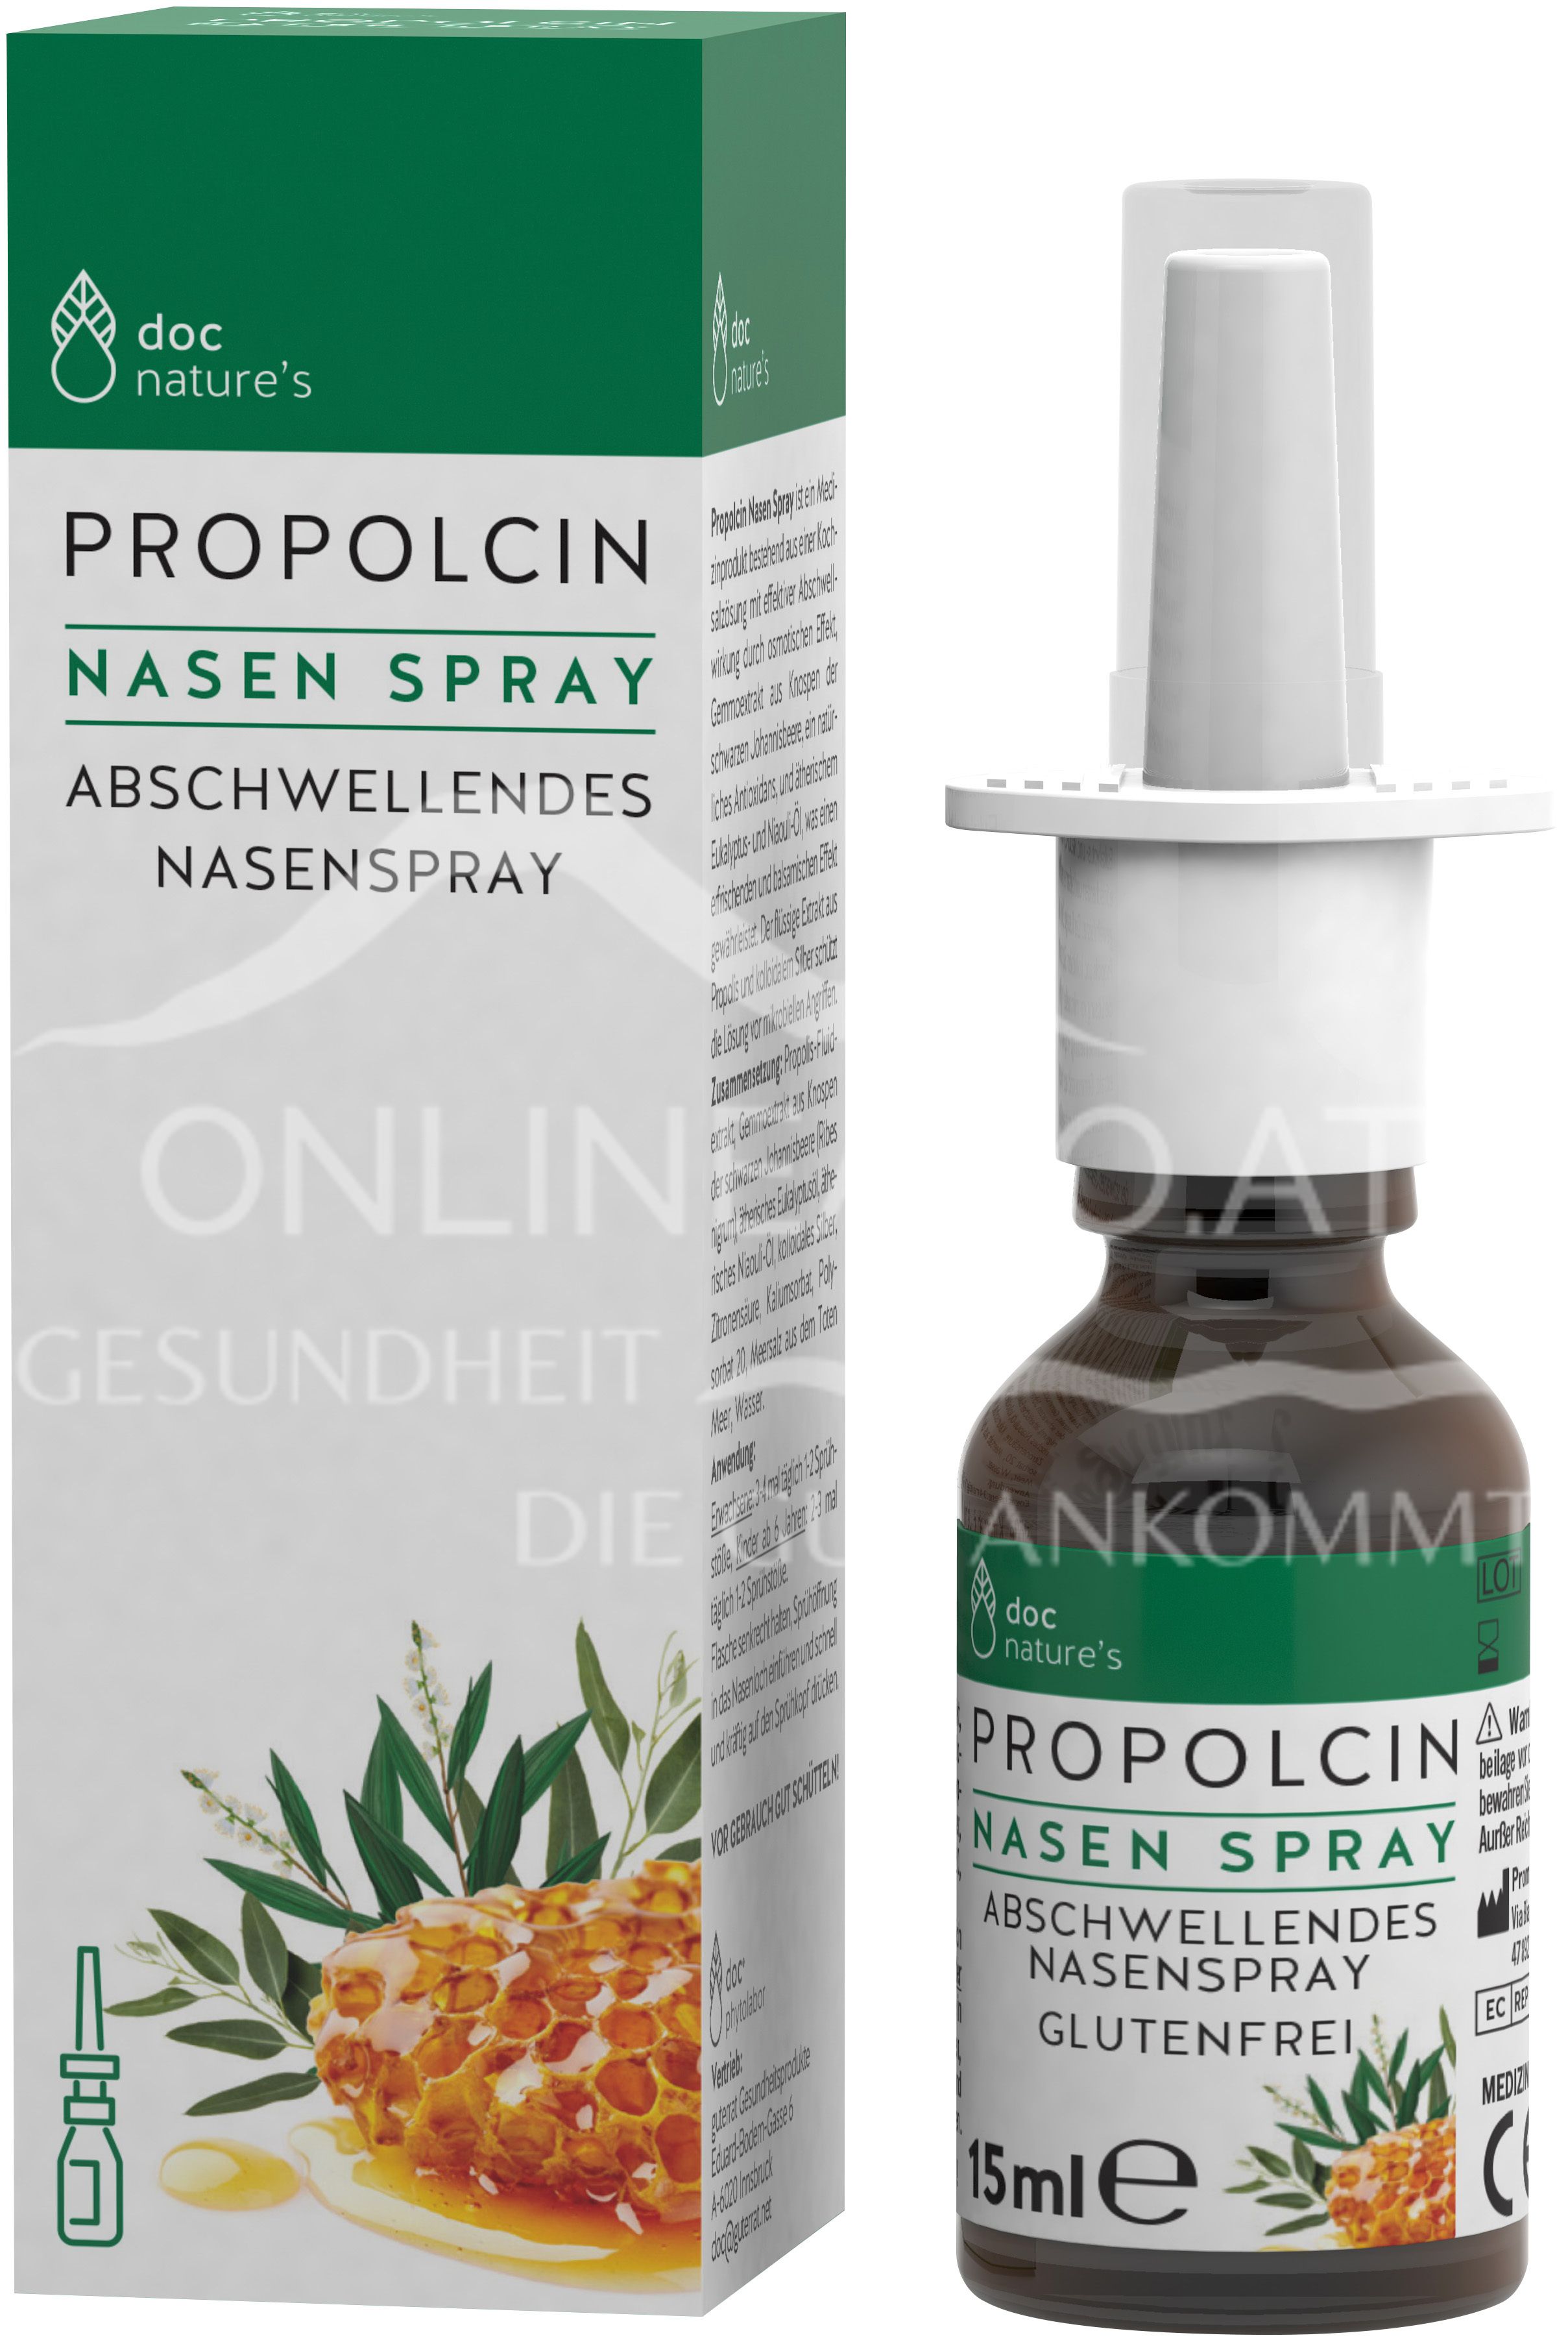 doc nature’s PROPOLCIN® Nasen Spray